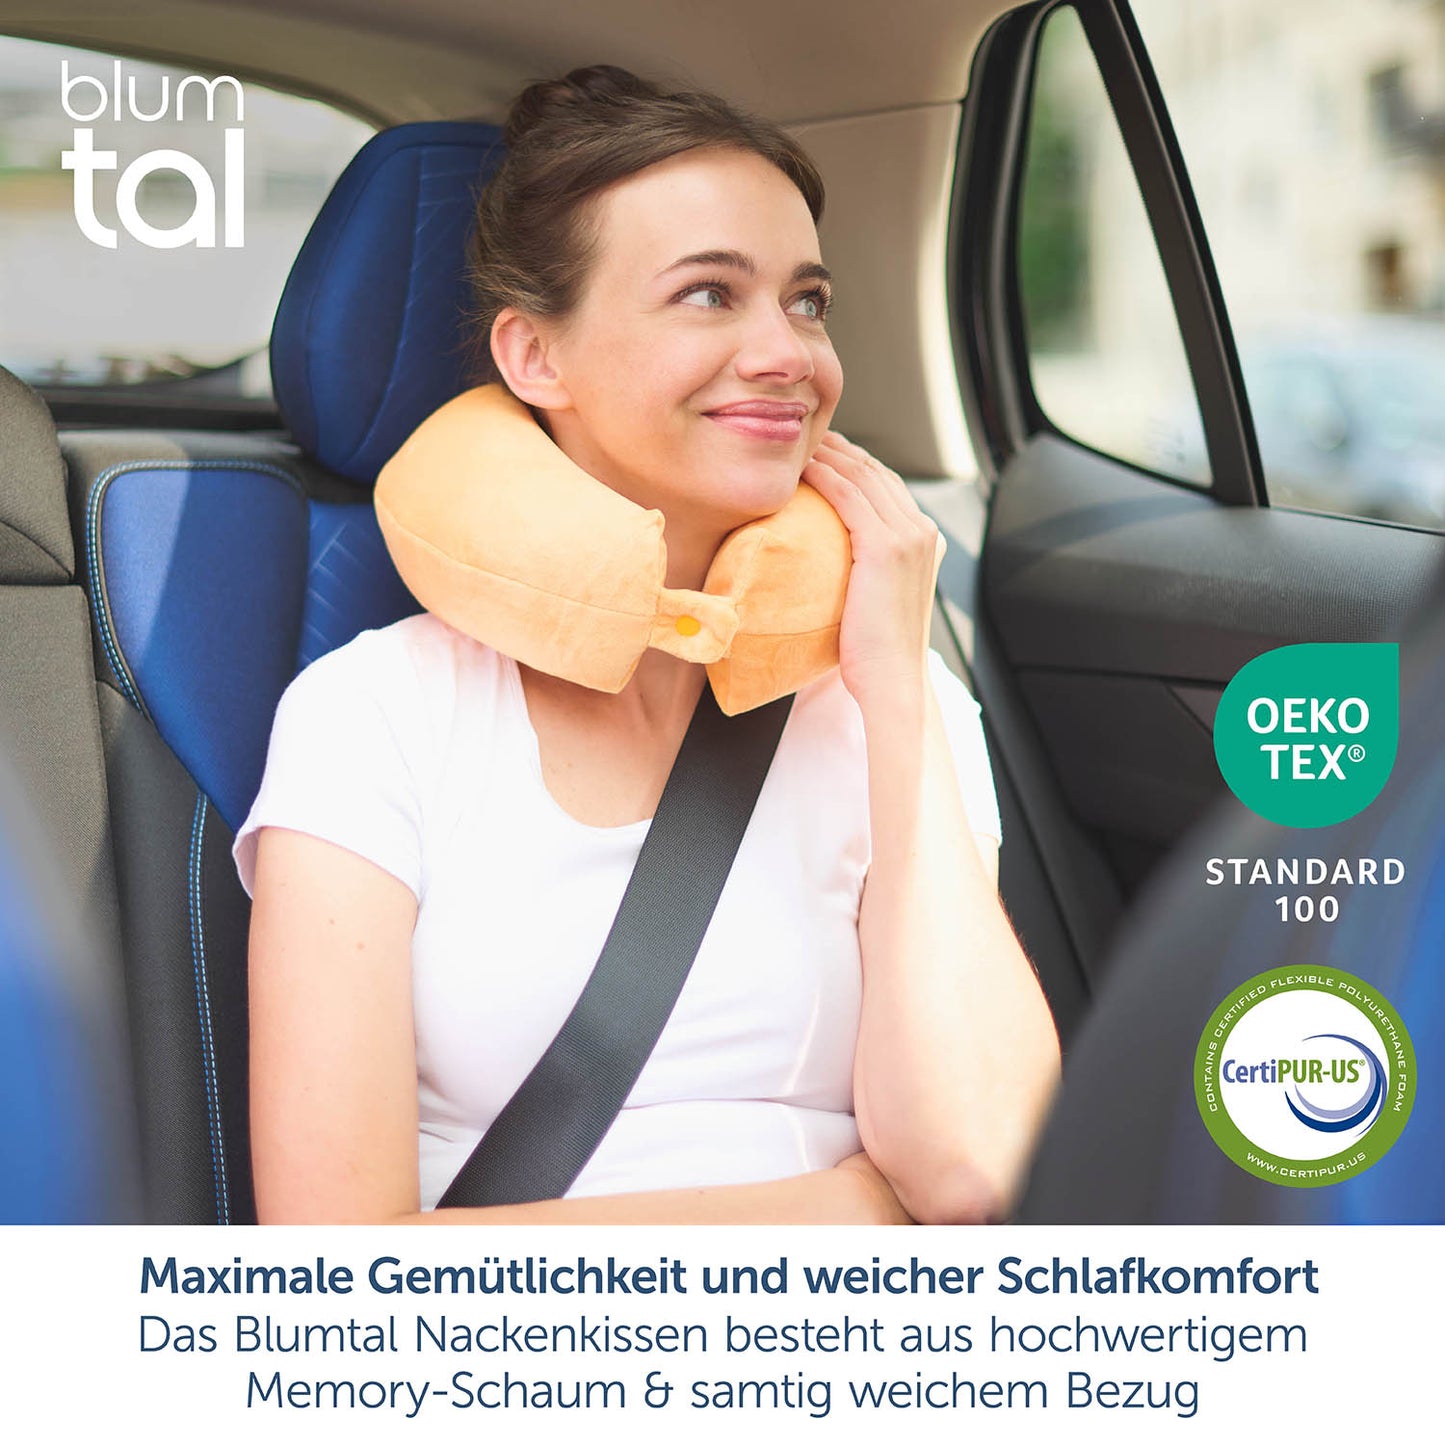 Das Bild zeigt eine junge Frau, die im Beifahrersitz eines Autos sitzt und ein gelbes Nackenkissen trägt. Sie hat auch eine Schlafmaske auf und lehnt entspannt zurück, wobei der Sicherheitsgurt angelegt ist. Oben links im Bild ist das blumtal-Logo zu sehen. Oben rechts steht "Mit Liebe aus Köln" und darunter "In Deutschland auf Qualität und Schadstoffe geprüft" neben einem deutschen Herz-Icon.